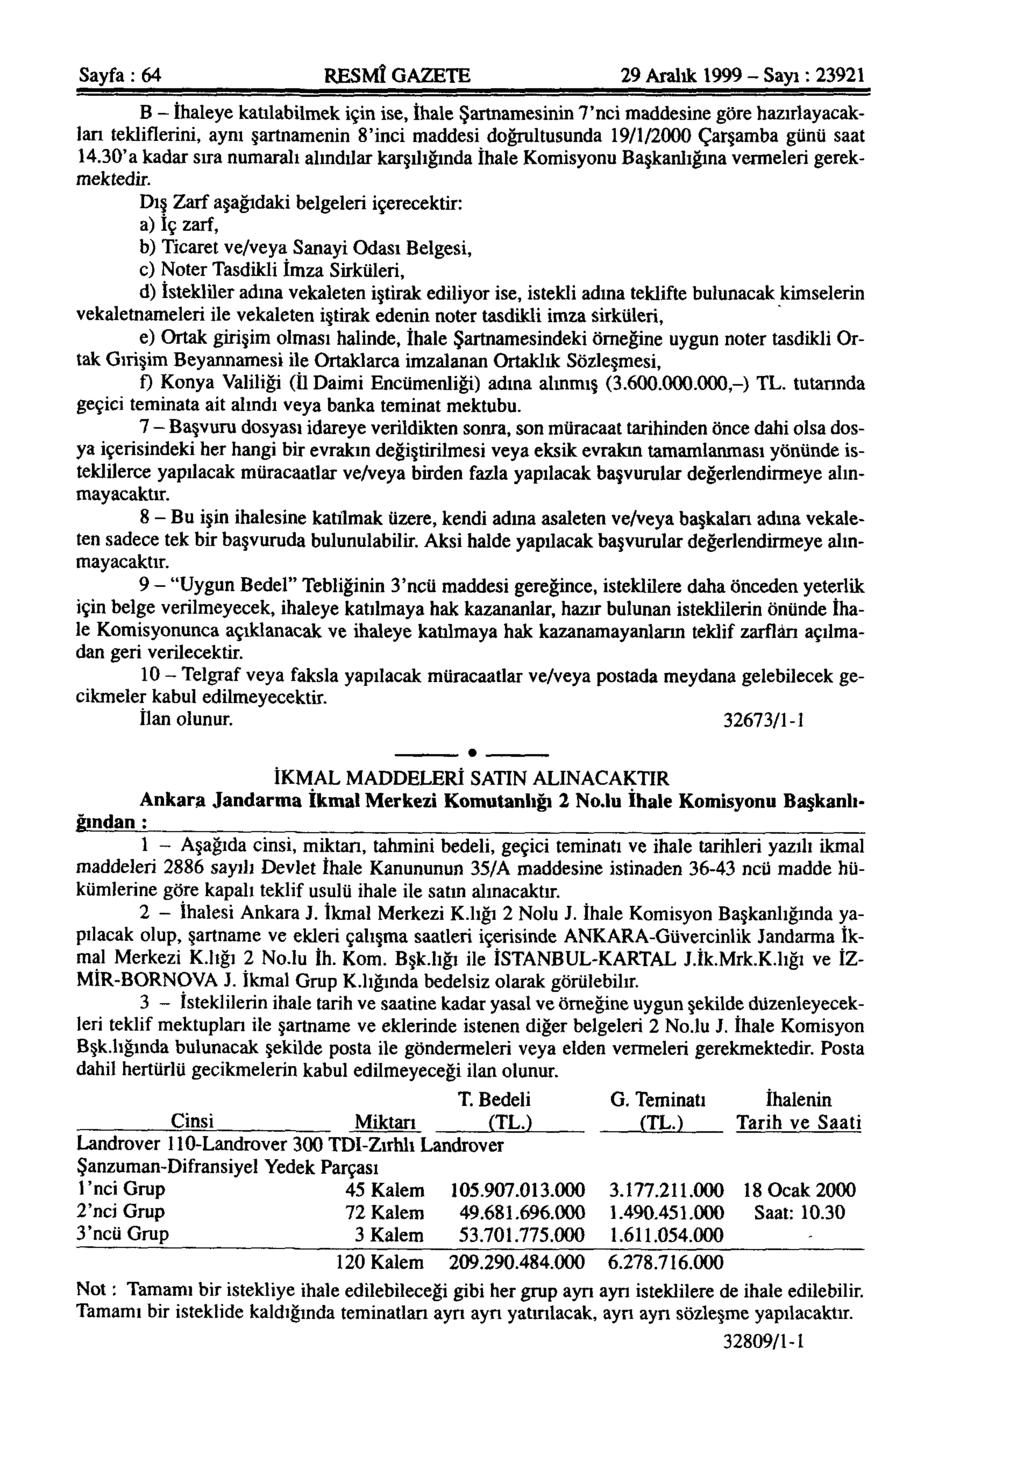 Sayfa: 64 RESMÎ GAZETE 29 Aralık 1999 - Sayı: 23921 B - İhaleye katılabilmek için ise, İhale Şartnamesinin 7'nci maddesine göre hazırlayacakları tekliflerini, aynı şartnamenin 8'inci maddesi